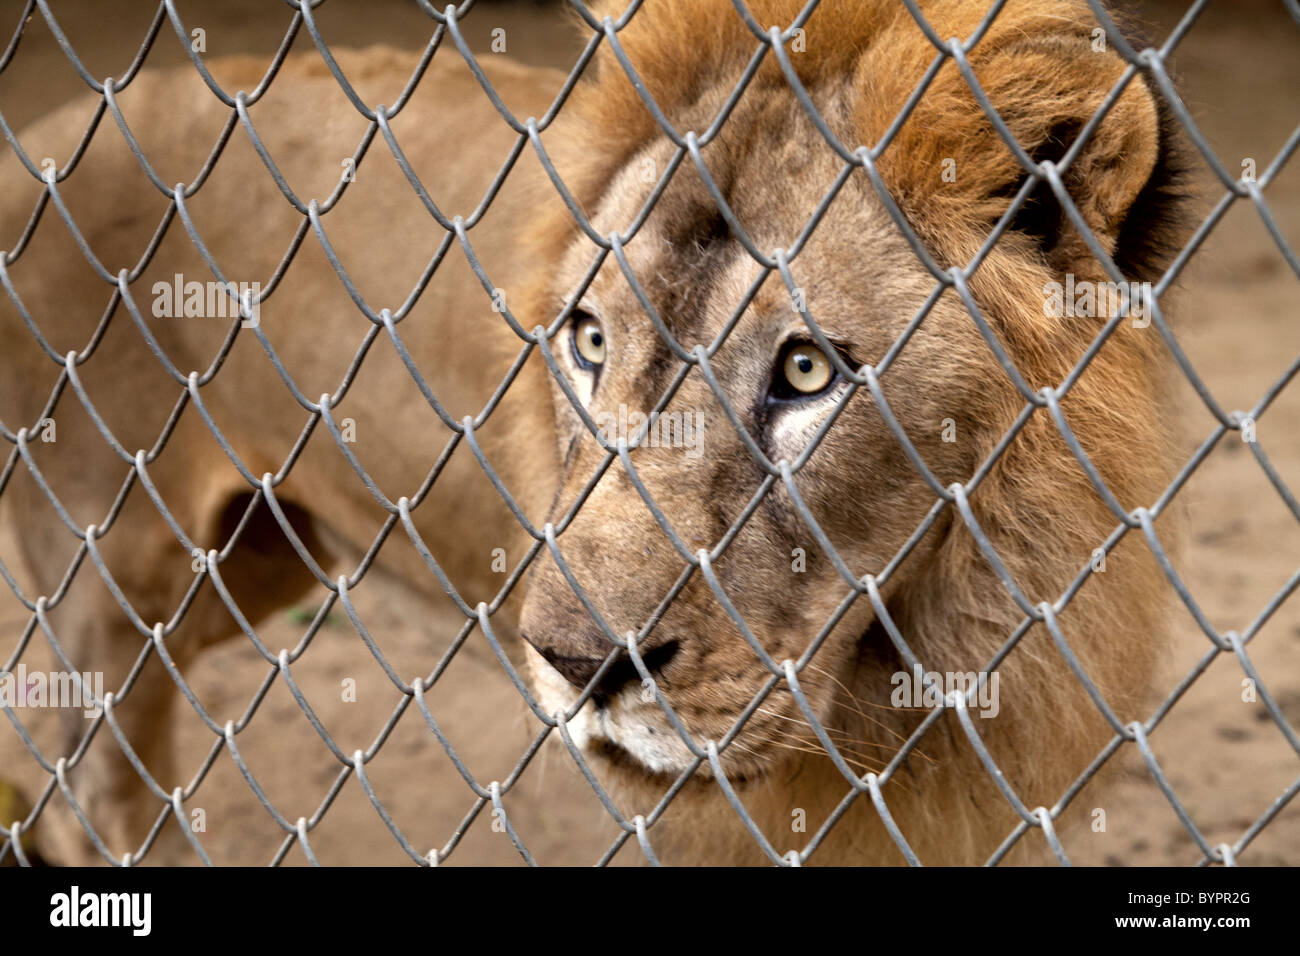 L'Inde, Rajasthan, Jaipur, ennuyé lion derrière le fil de la cage Banque D'Images